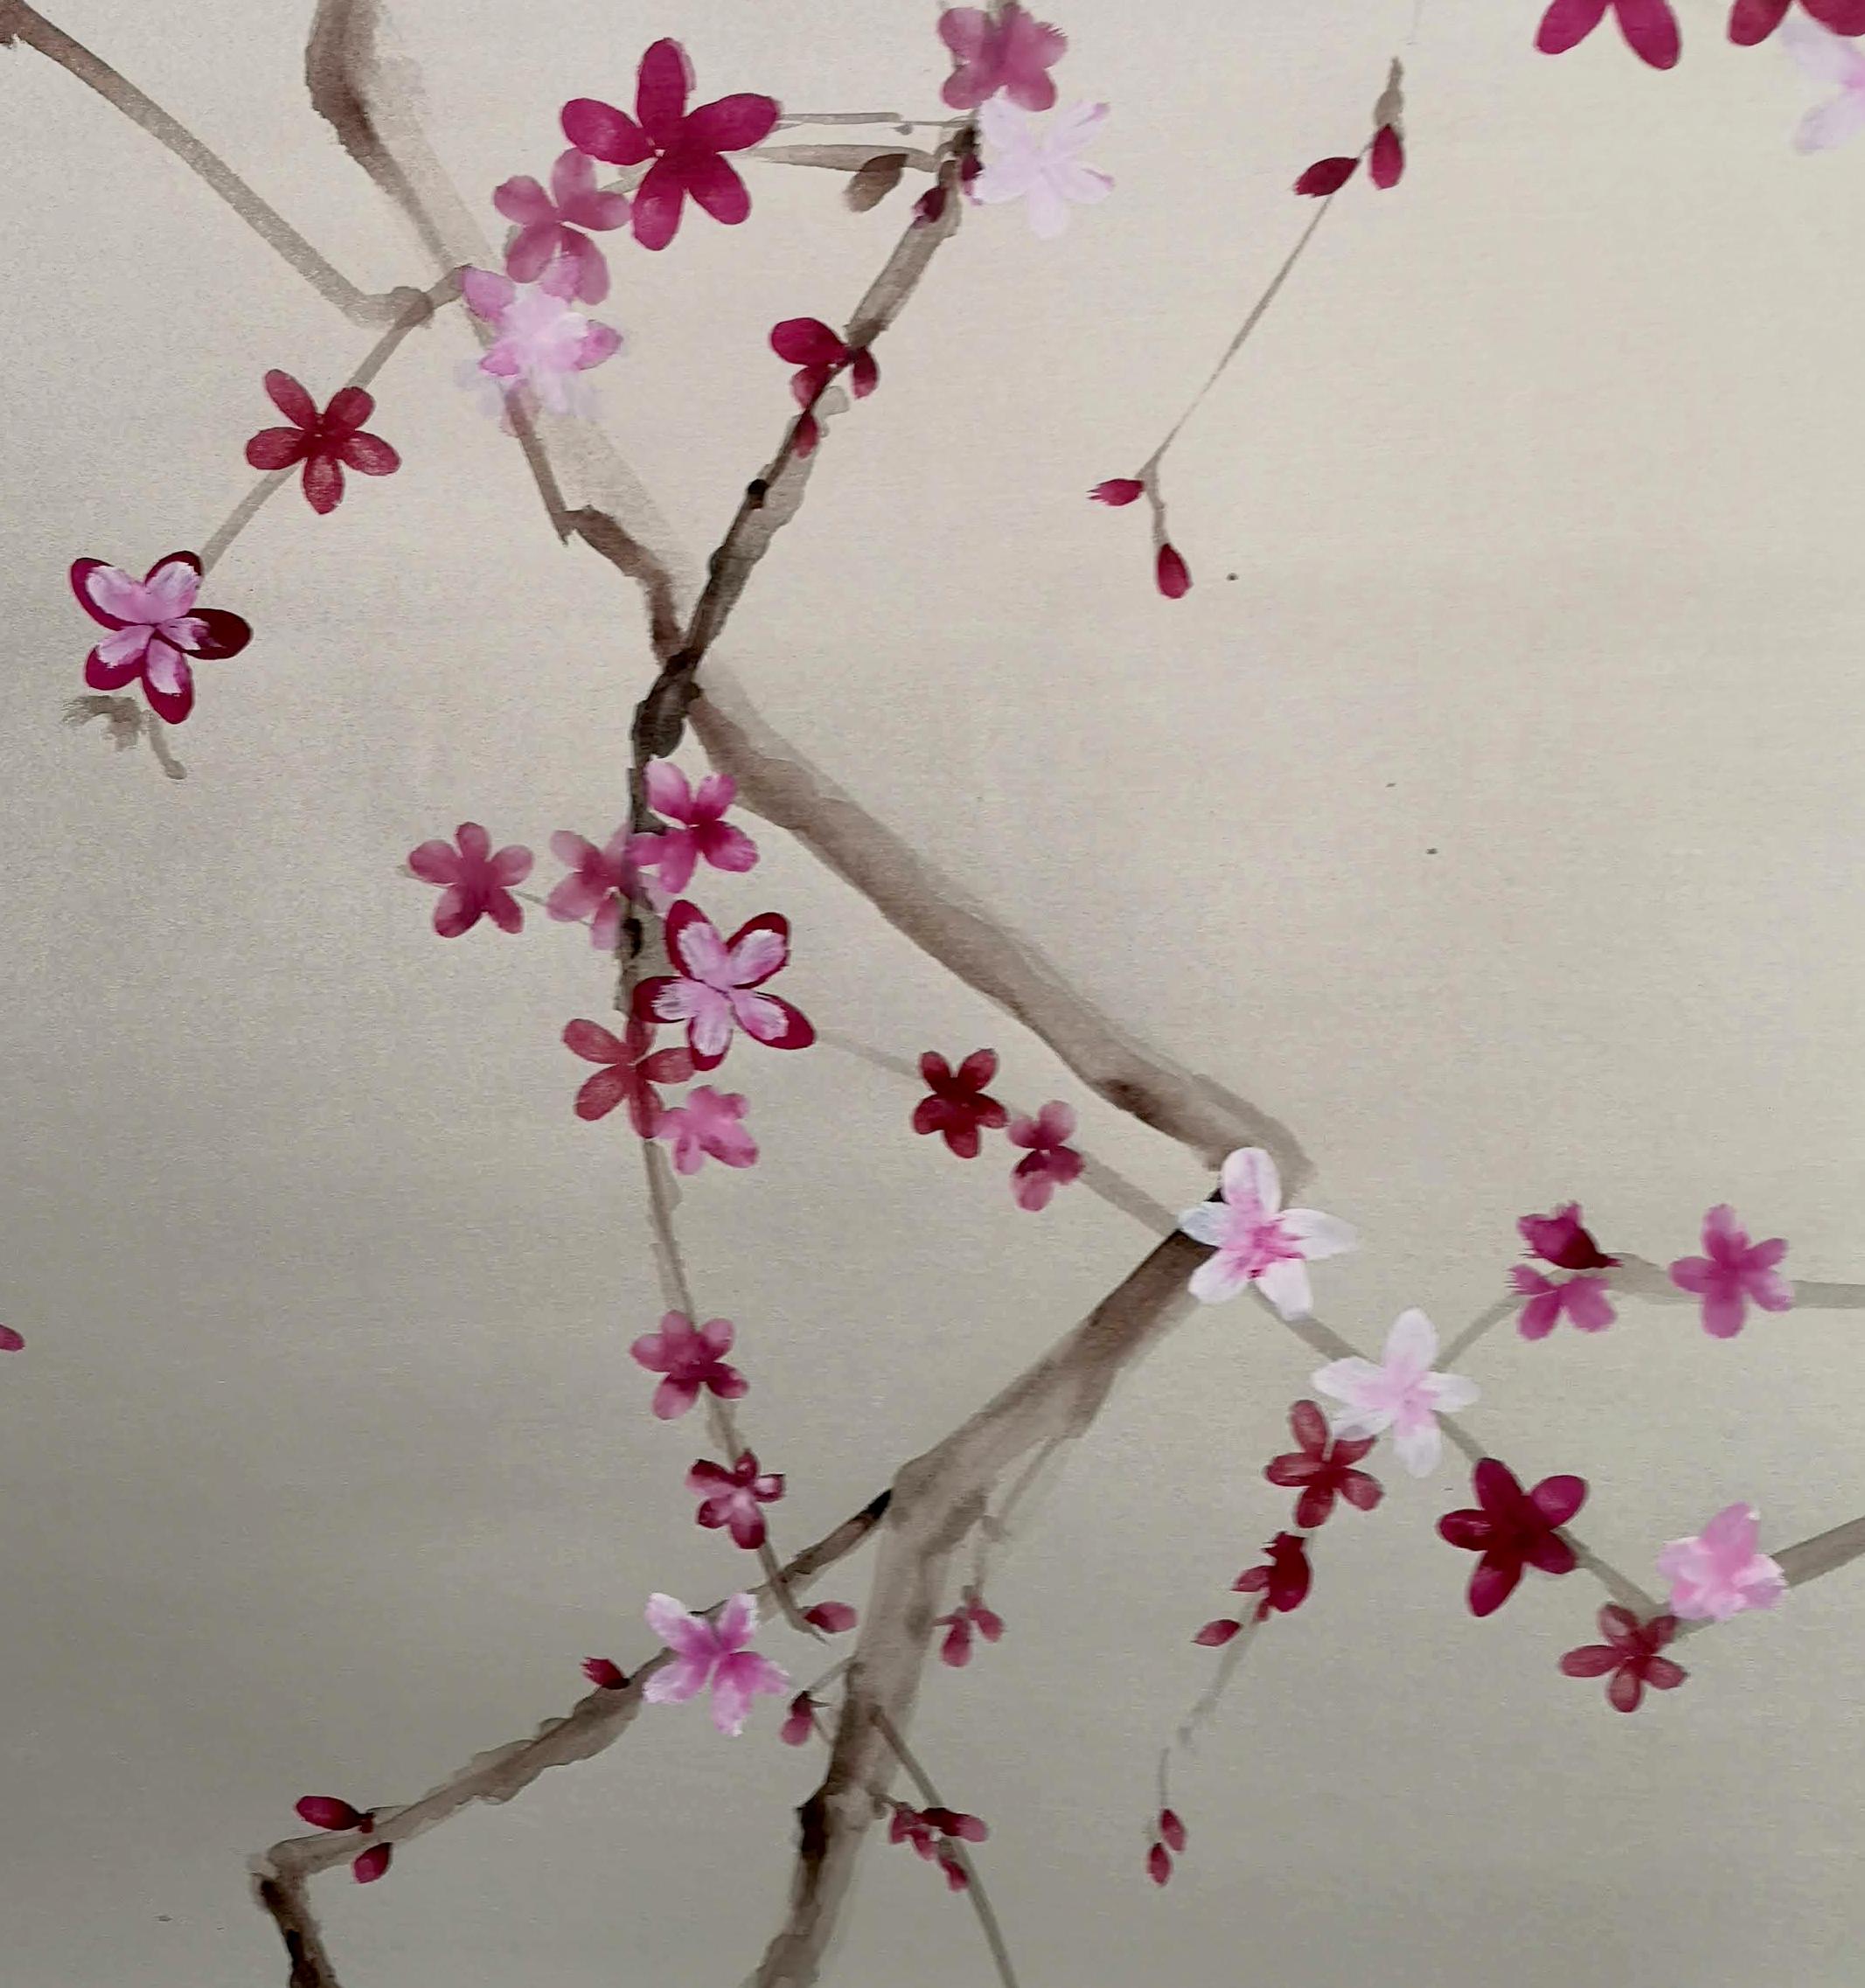 Une œuvre composée de trois panneaux représentant une fleur de prunier. Pour obtenir cet effet délicat, la technique du sumi-e a été utilisée. L'œuvre a été entièrement peinte à la main sur du papier 100% coton naturel, laqué à la main avec une base